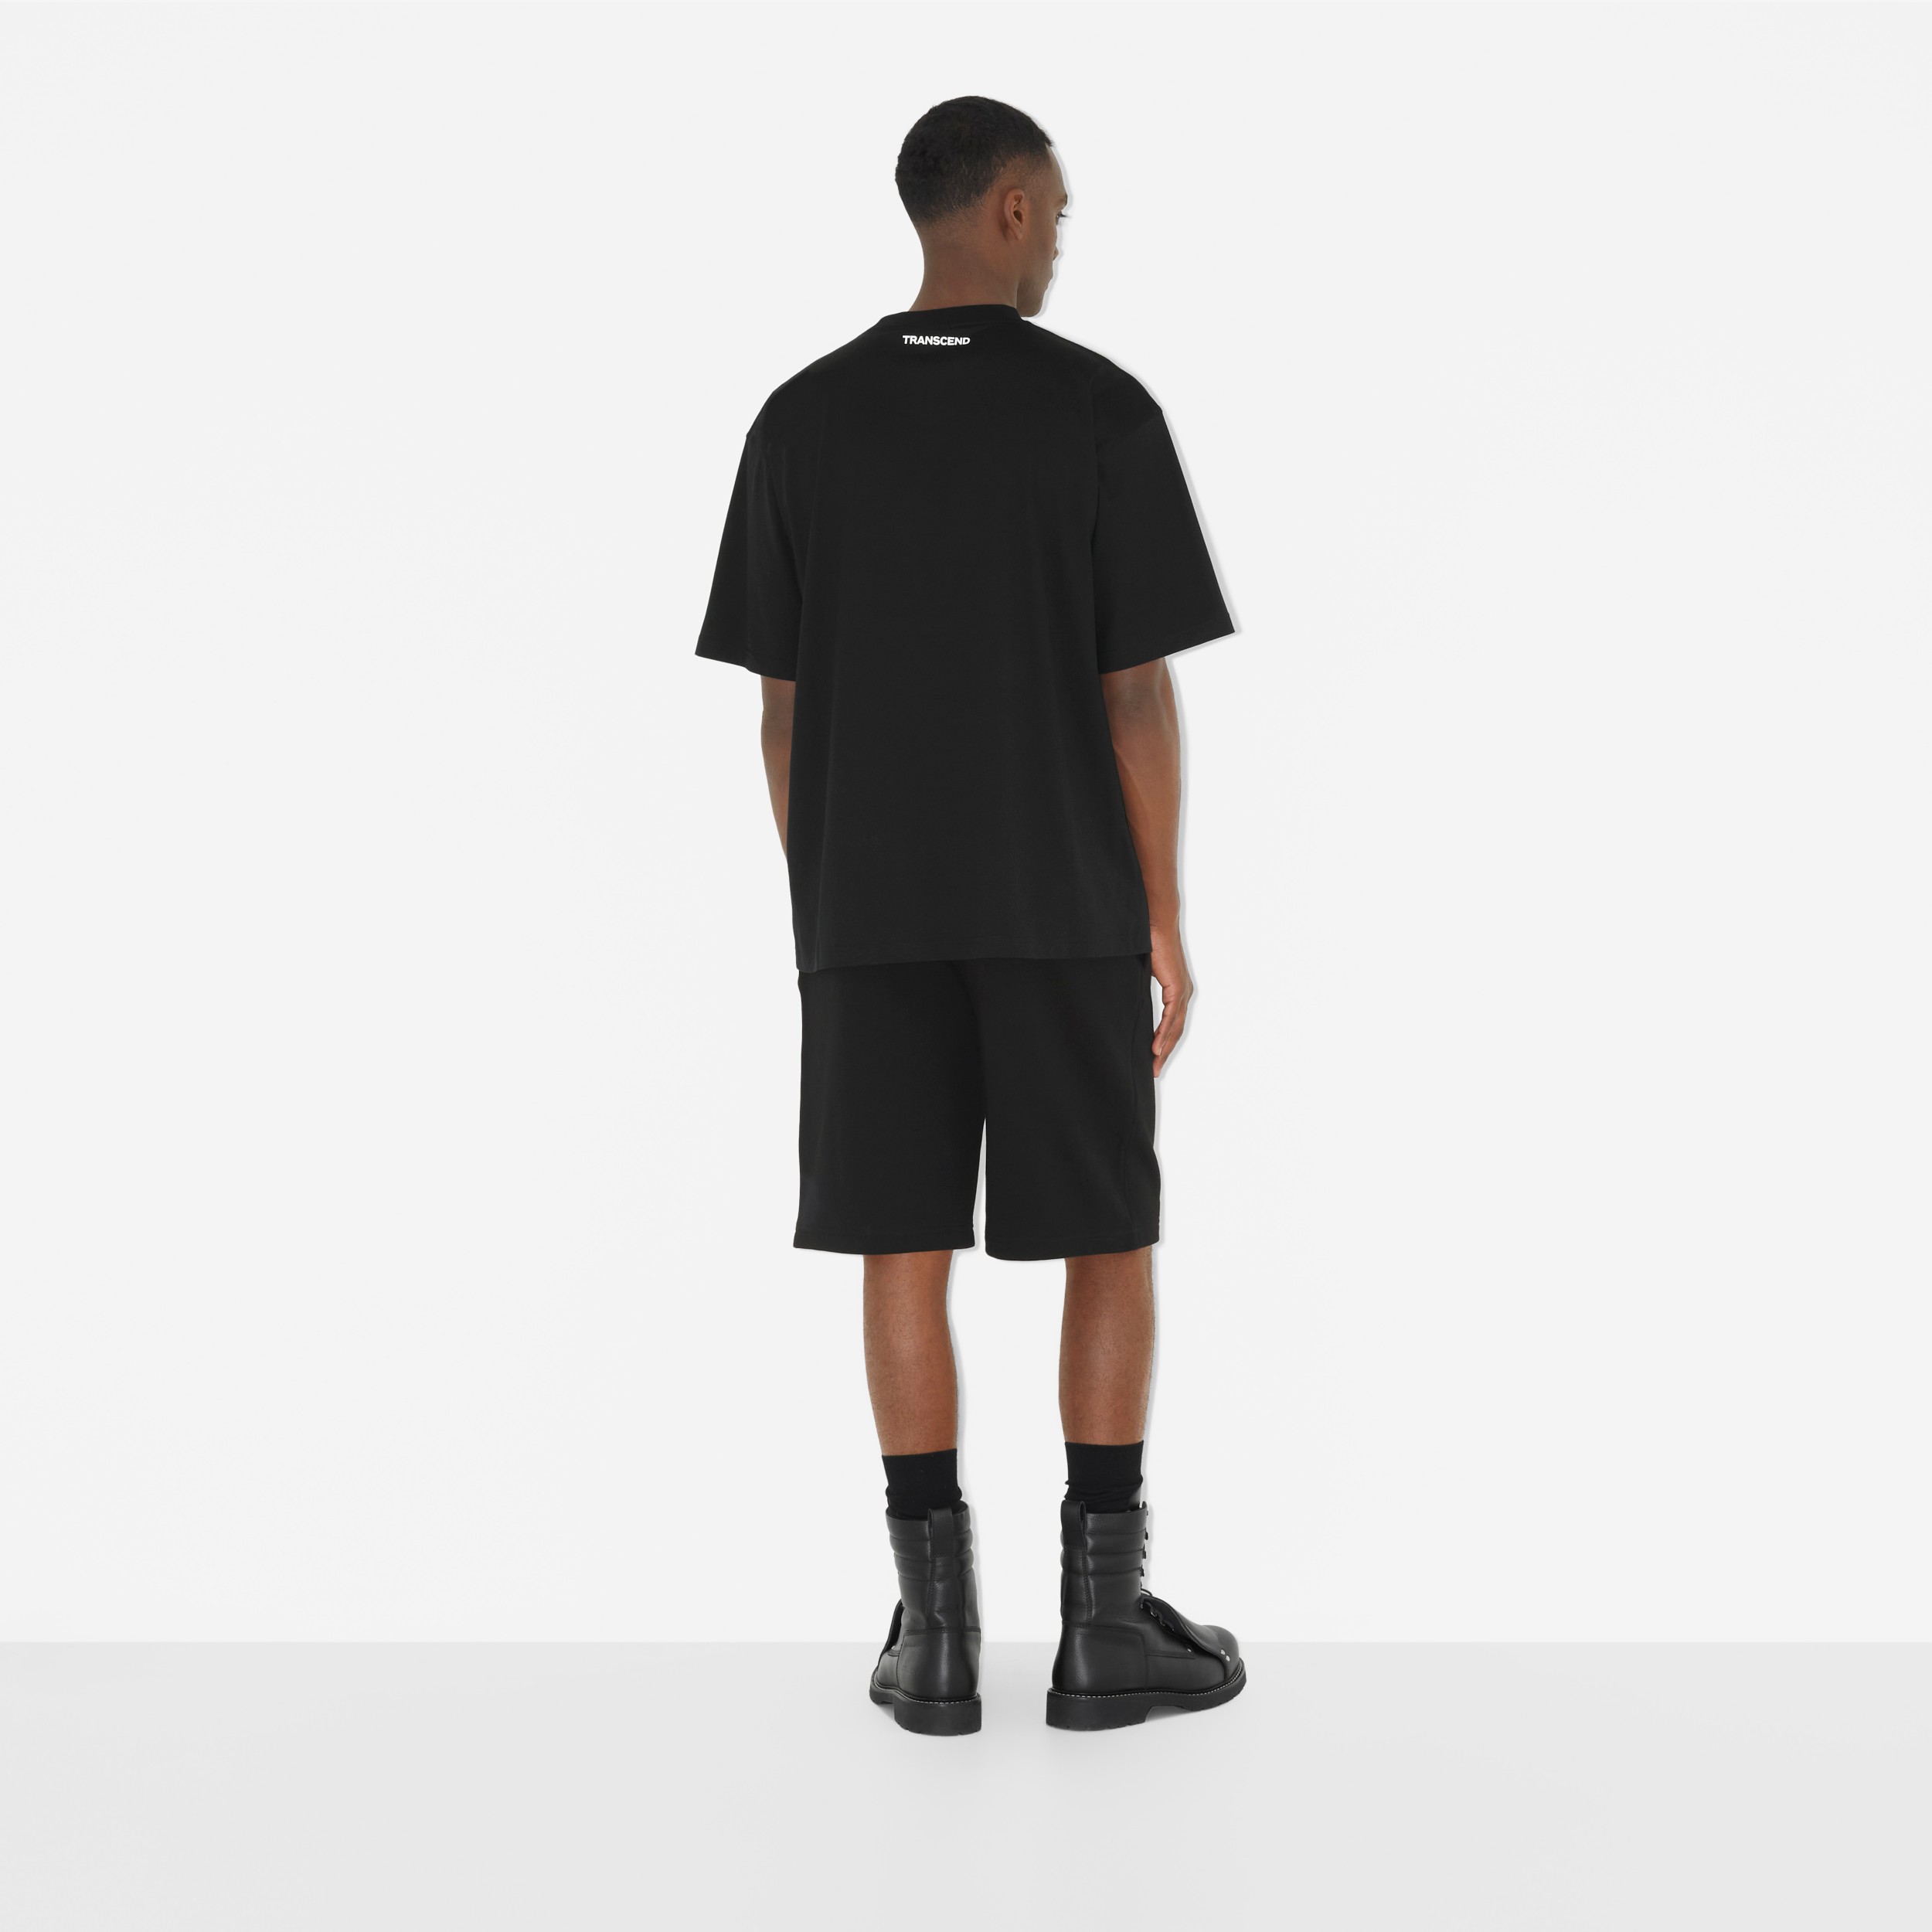 ロゴプリント コットンTシャツ (ブラック) - メンズ | Burberry®公式サイト